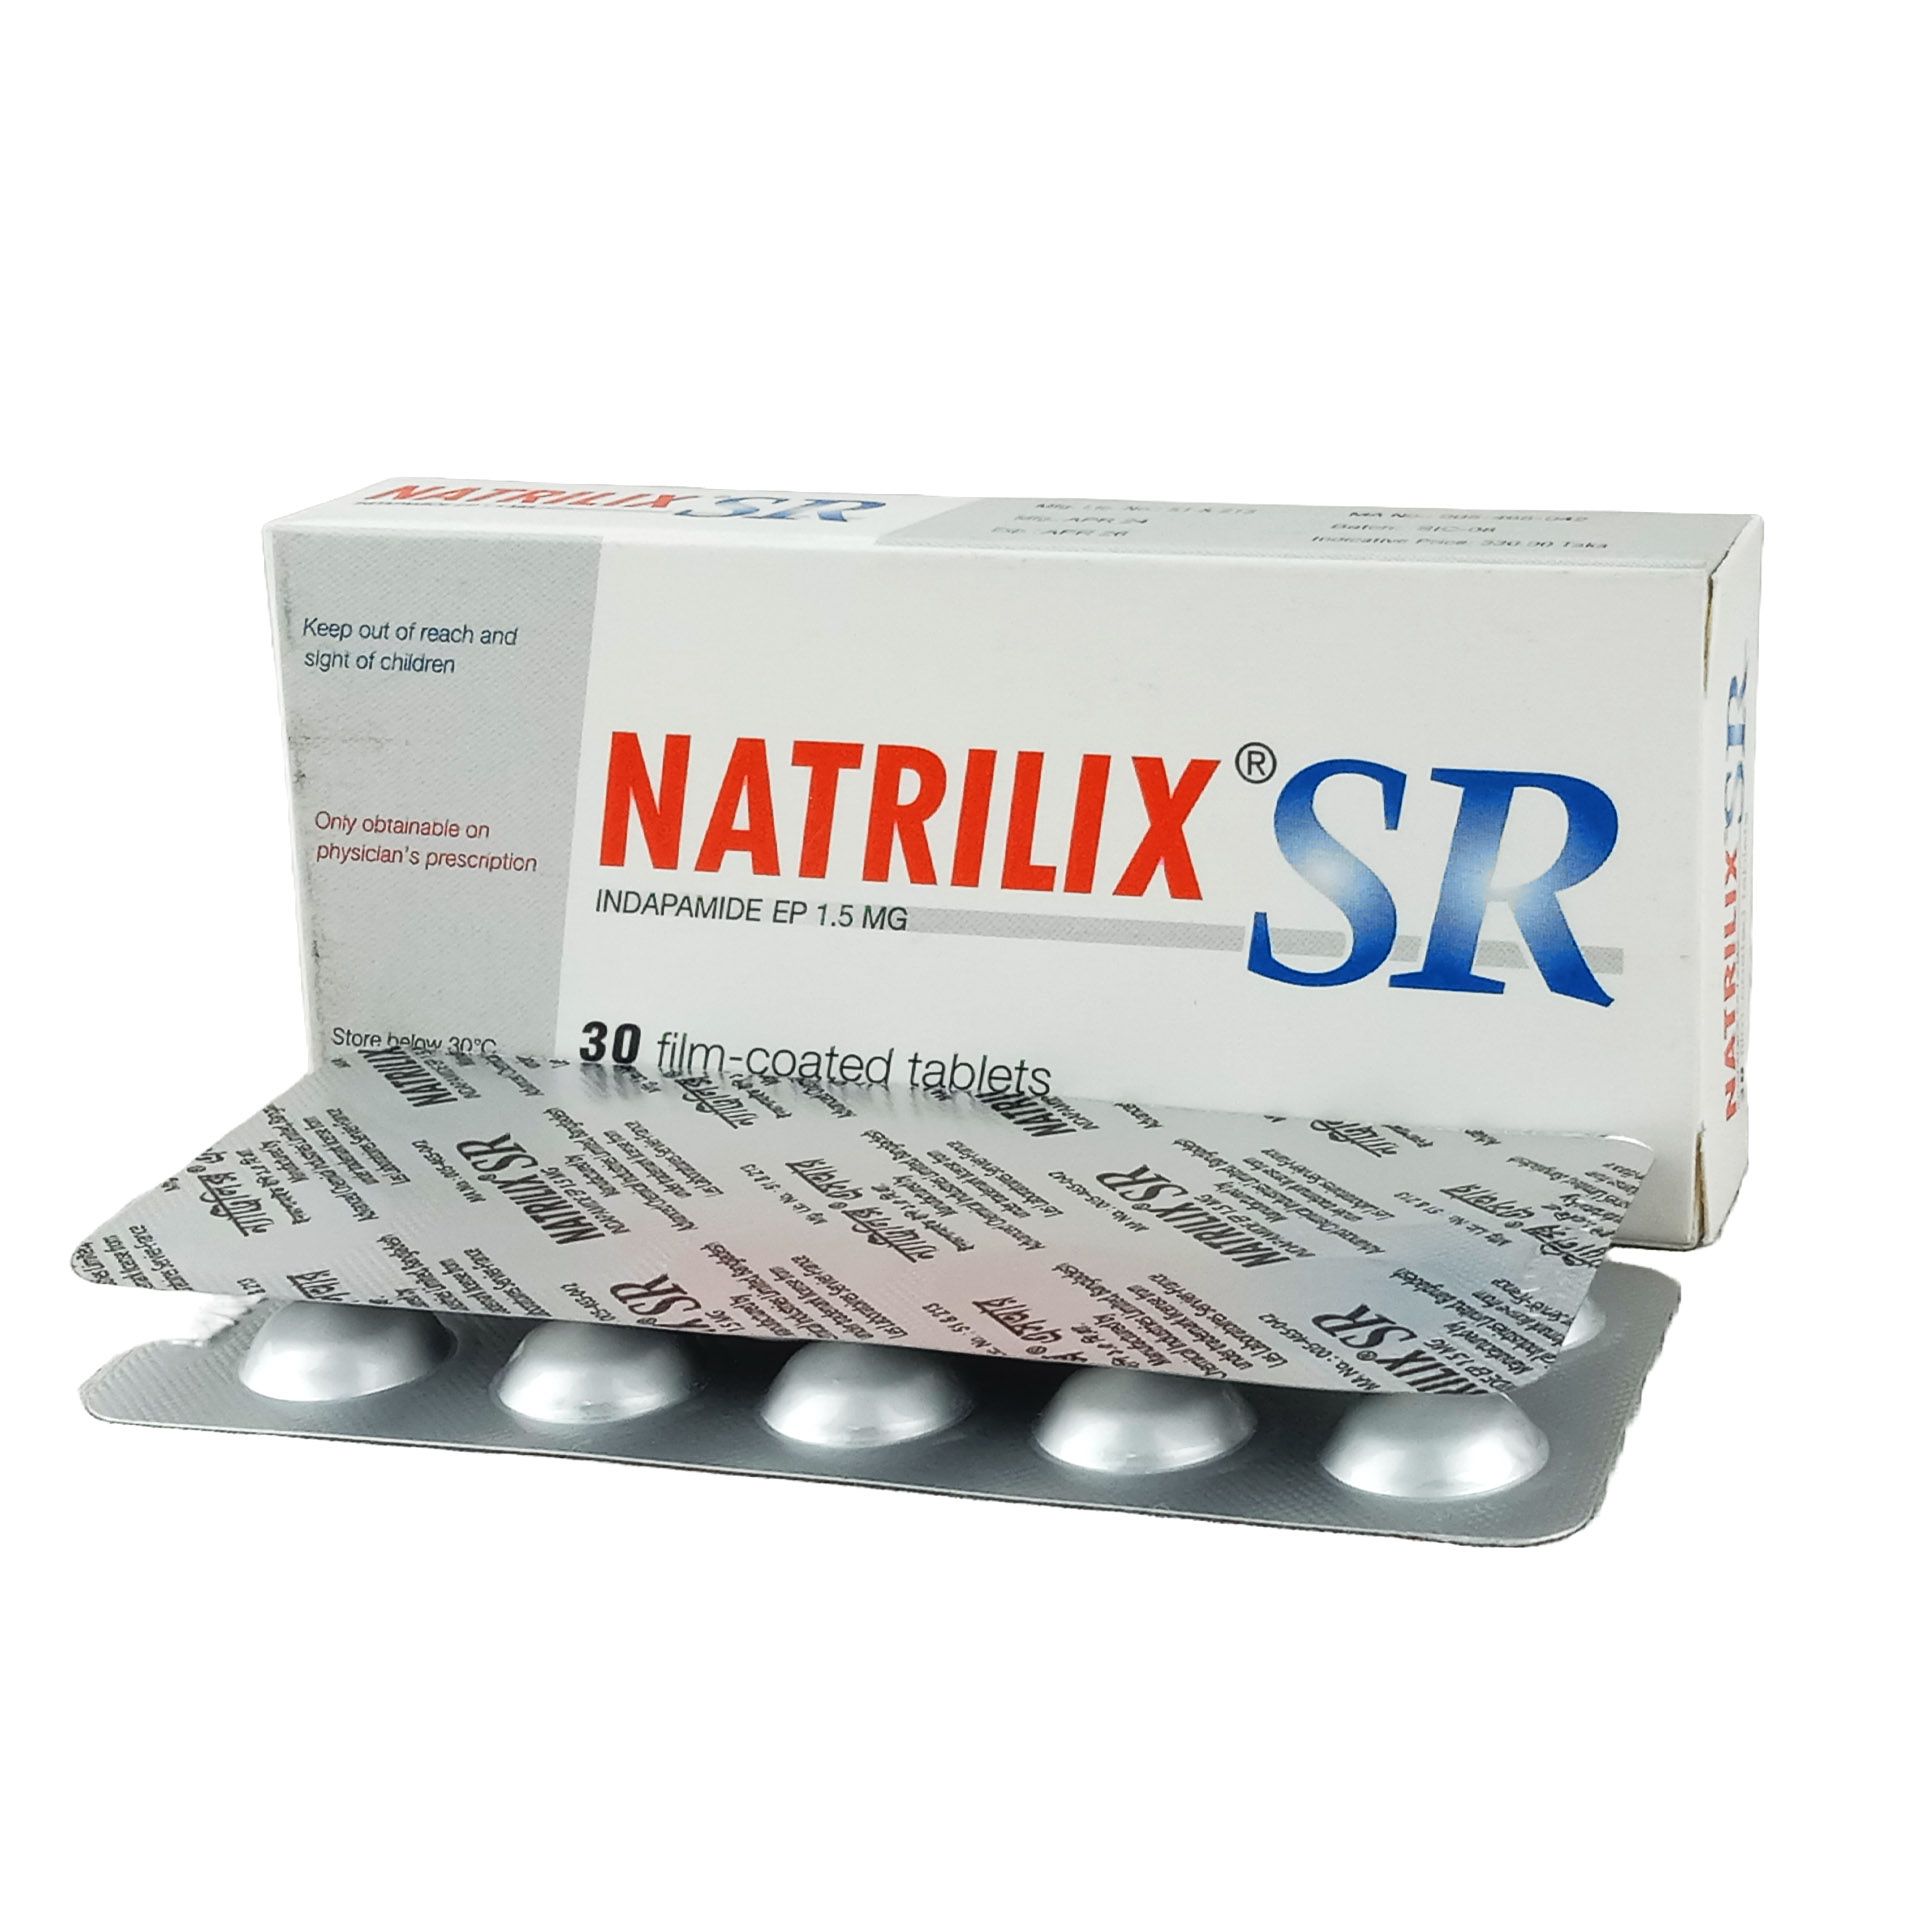 Natrilix SR 1.5mg tablet